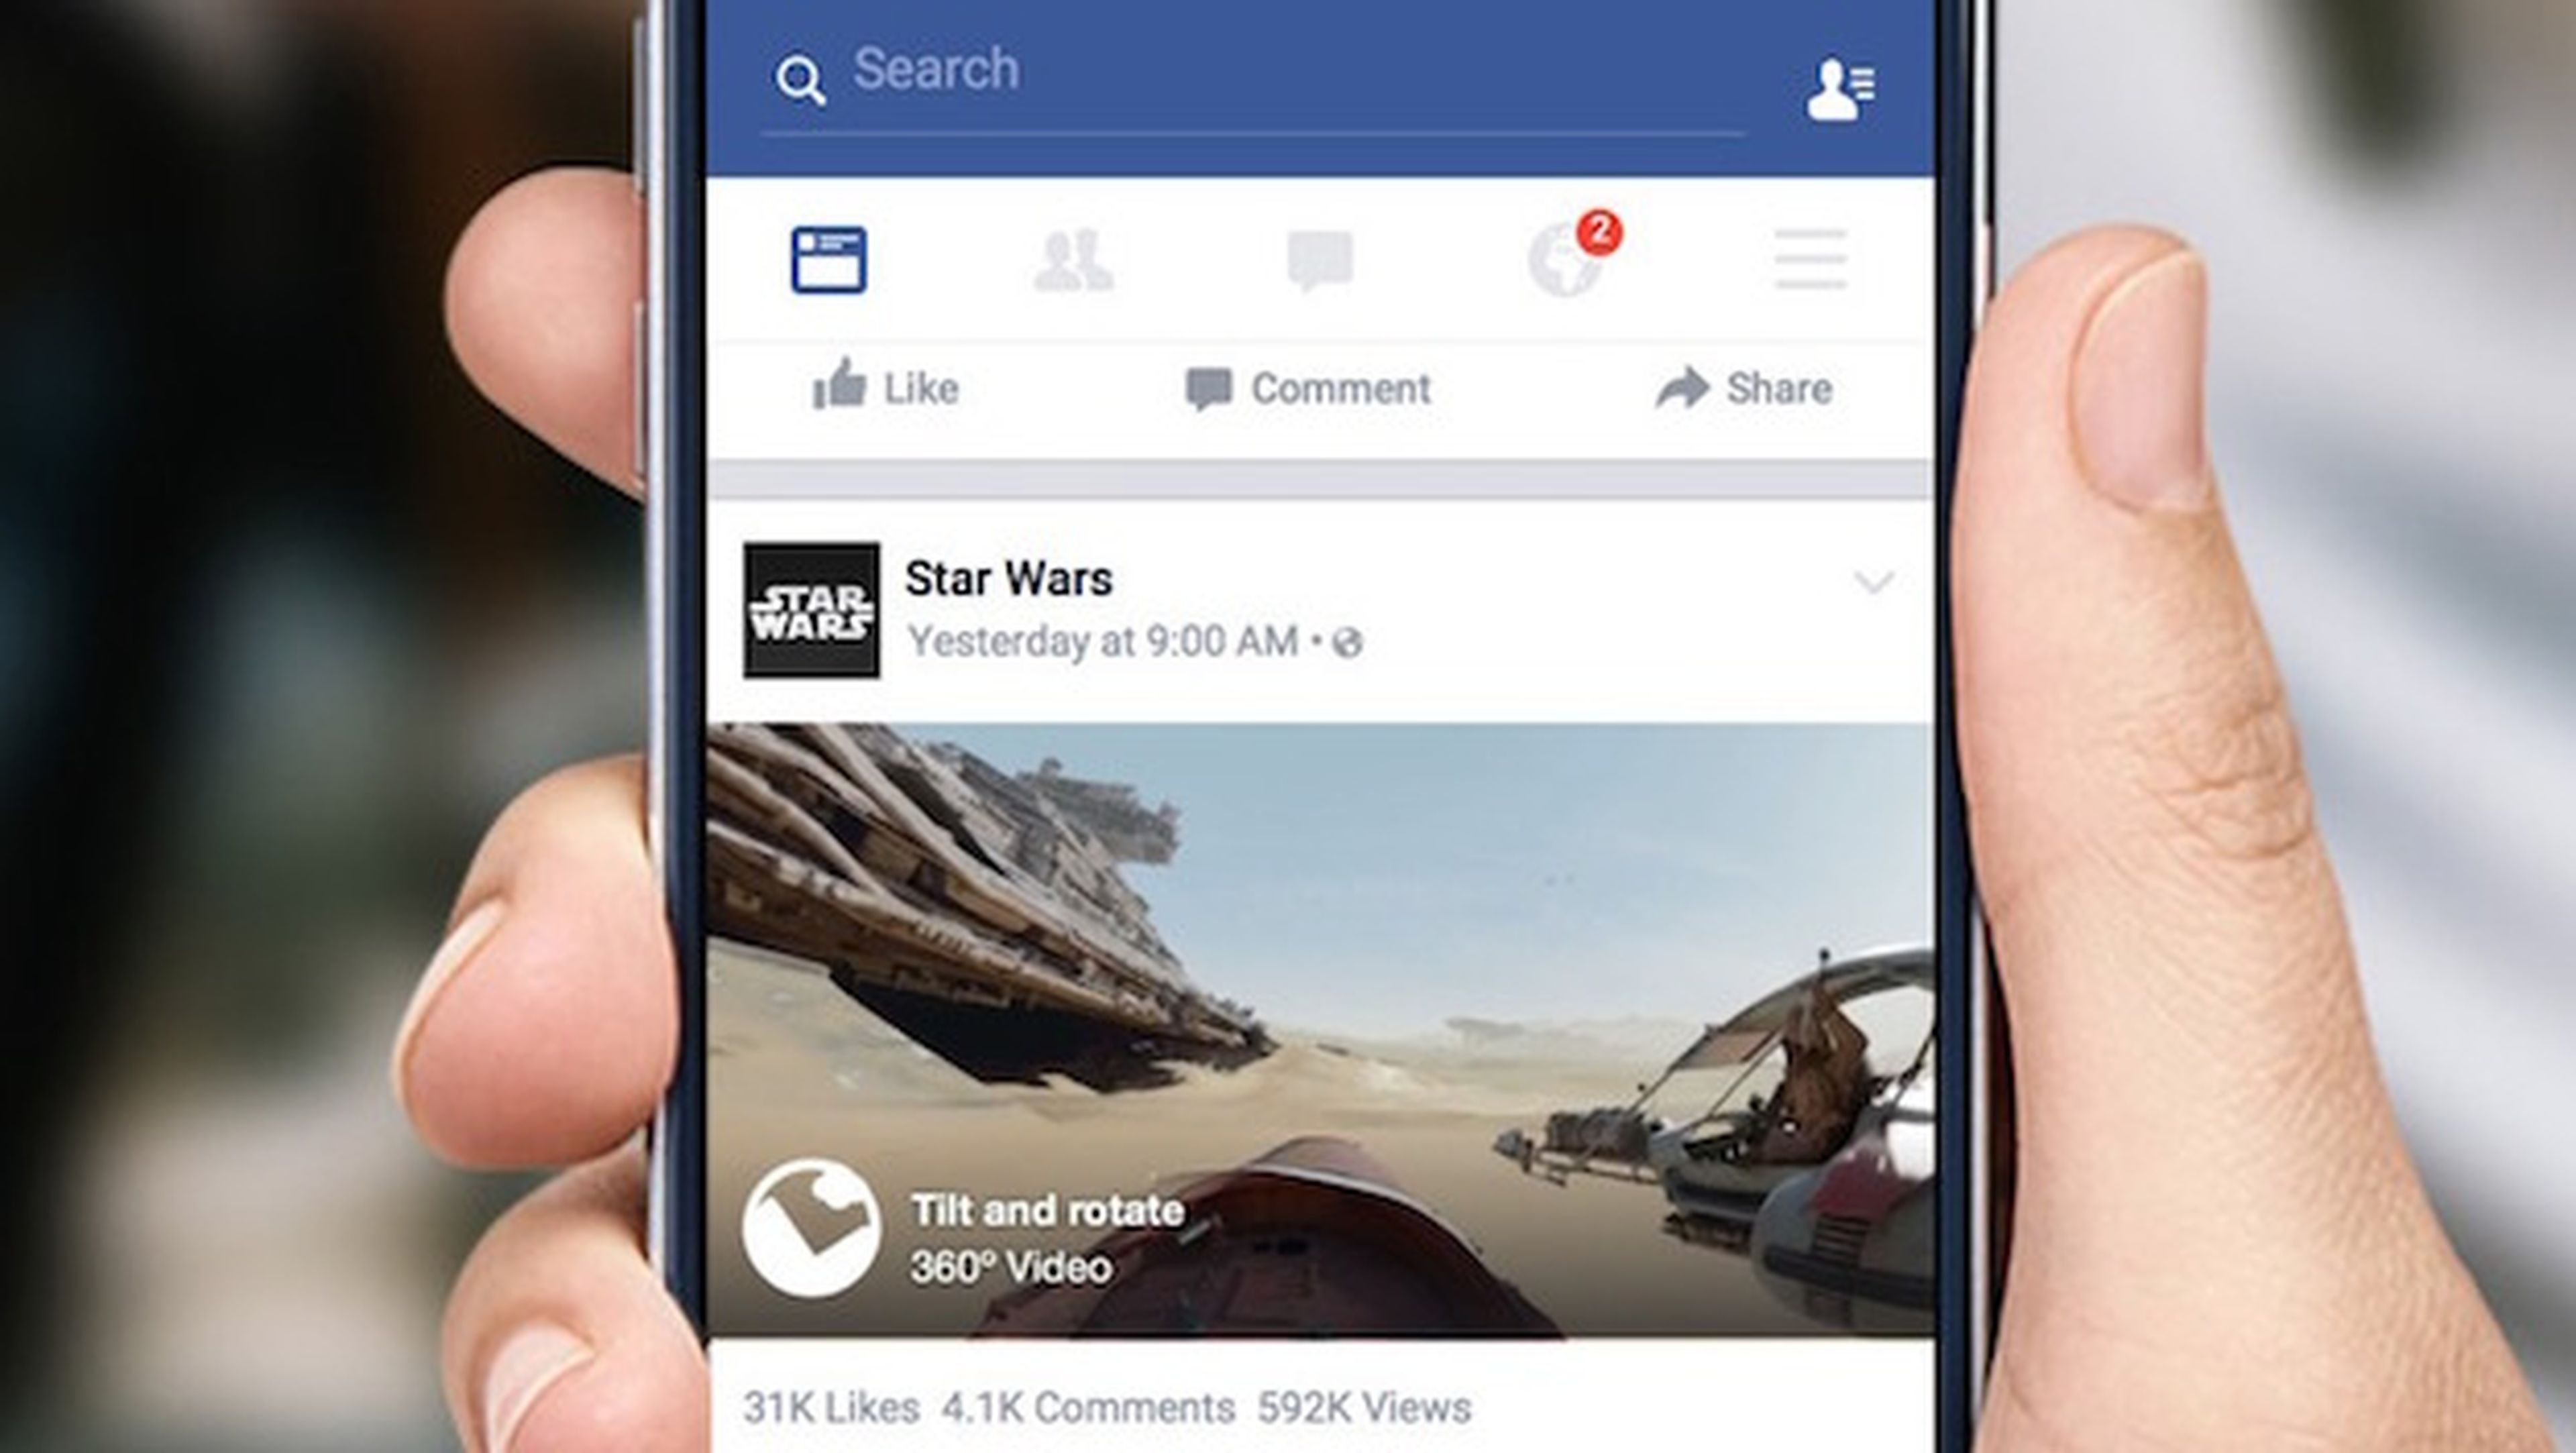 Facebook introduce vídeos de 360